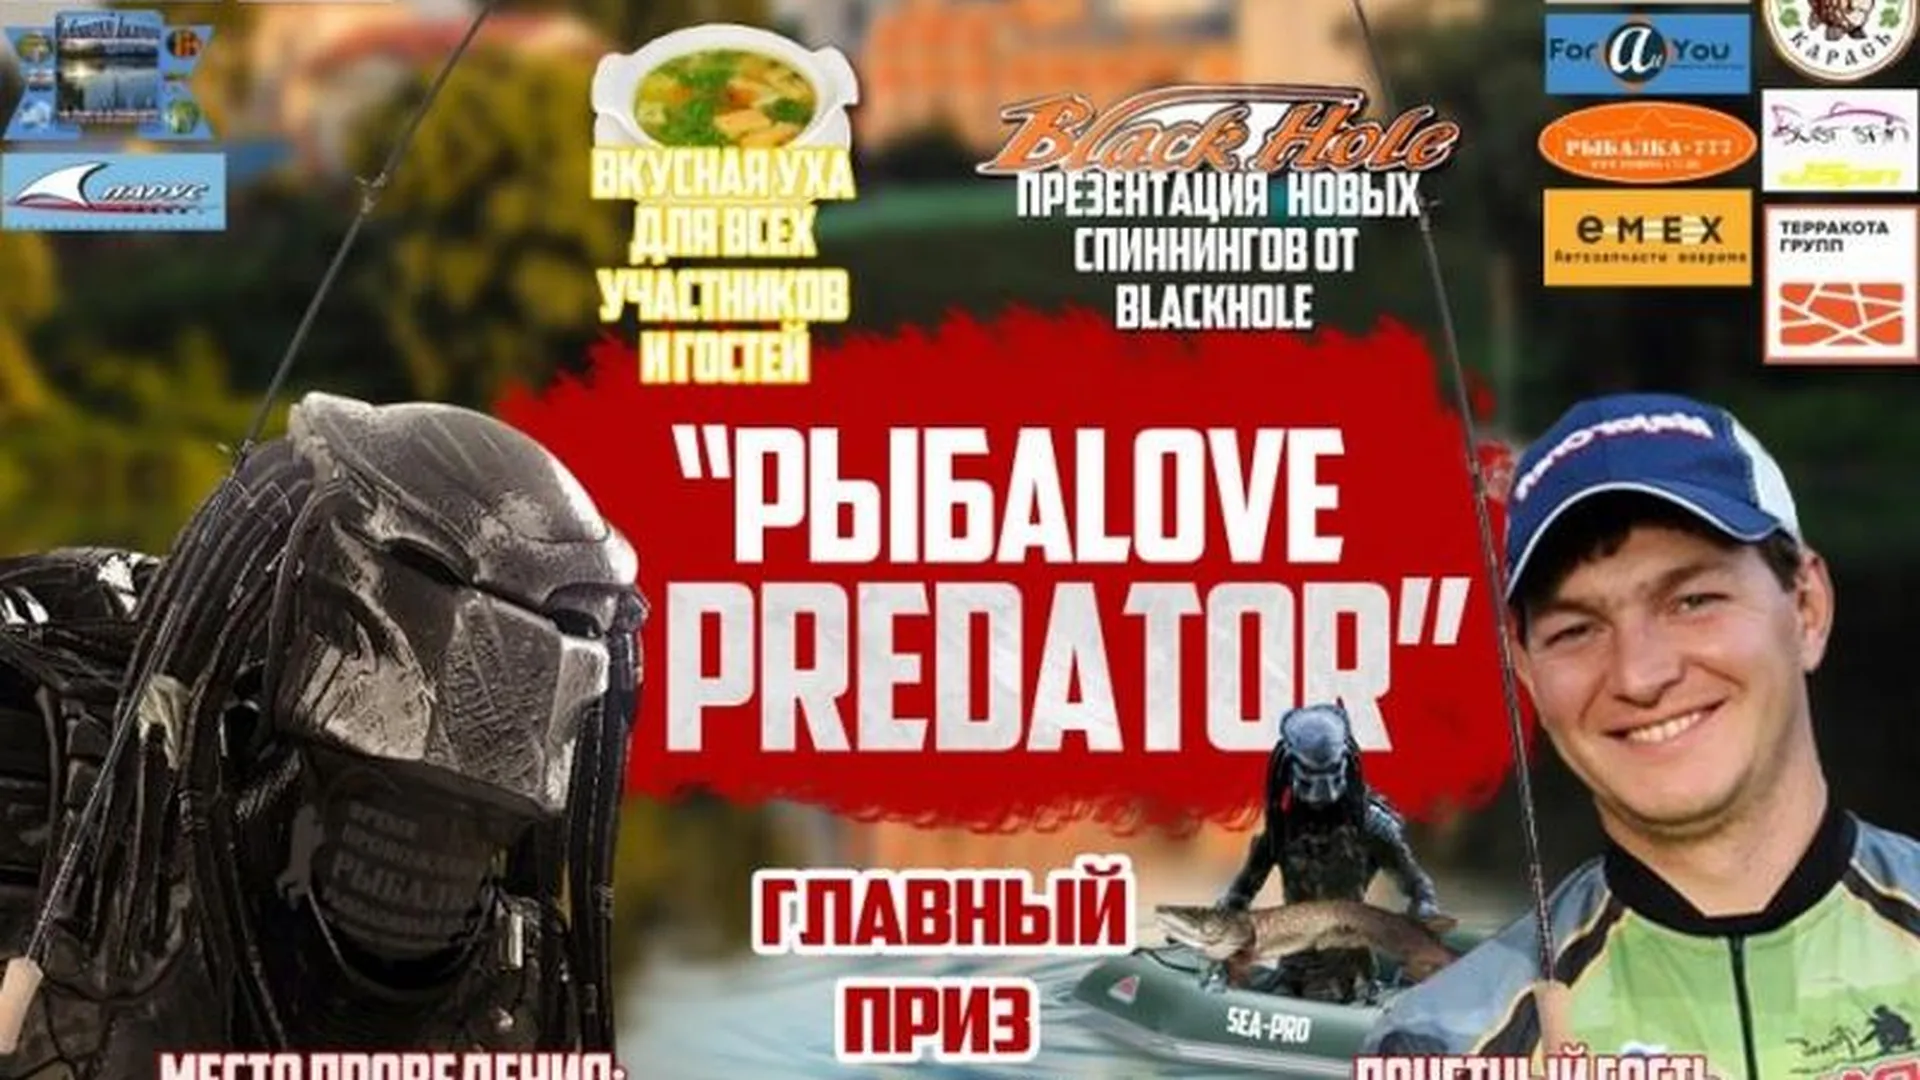 Спиннинг-турнир Рыбаlove Predator пройдет в Коломенском районе